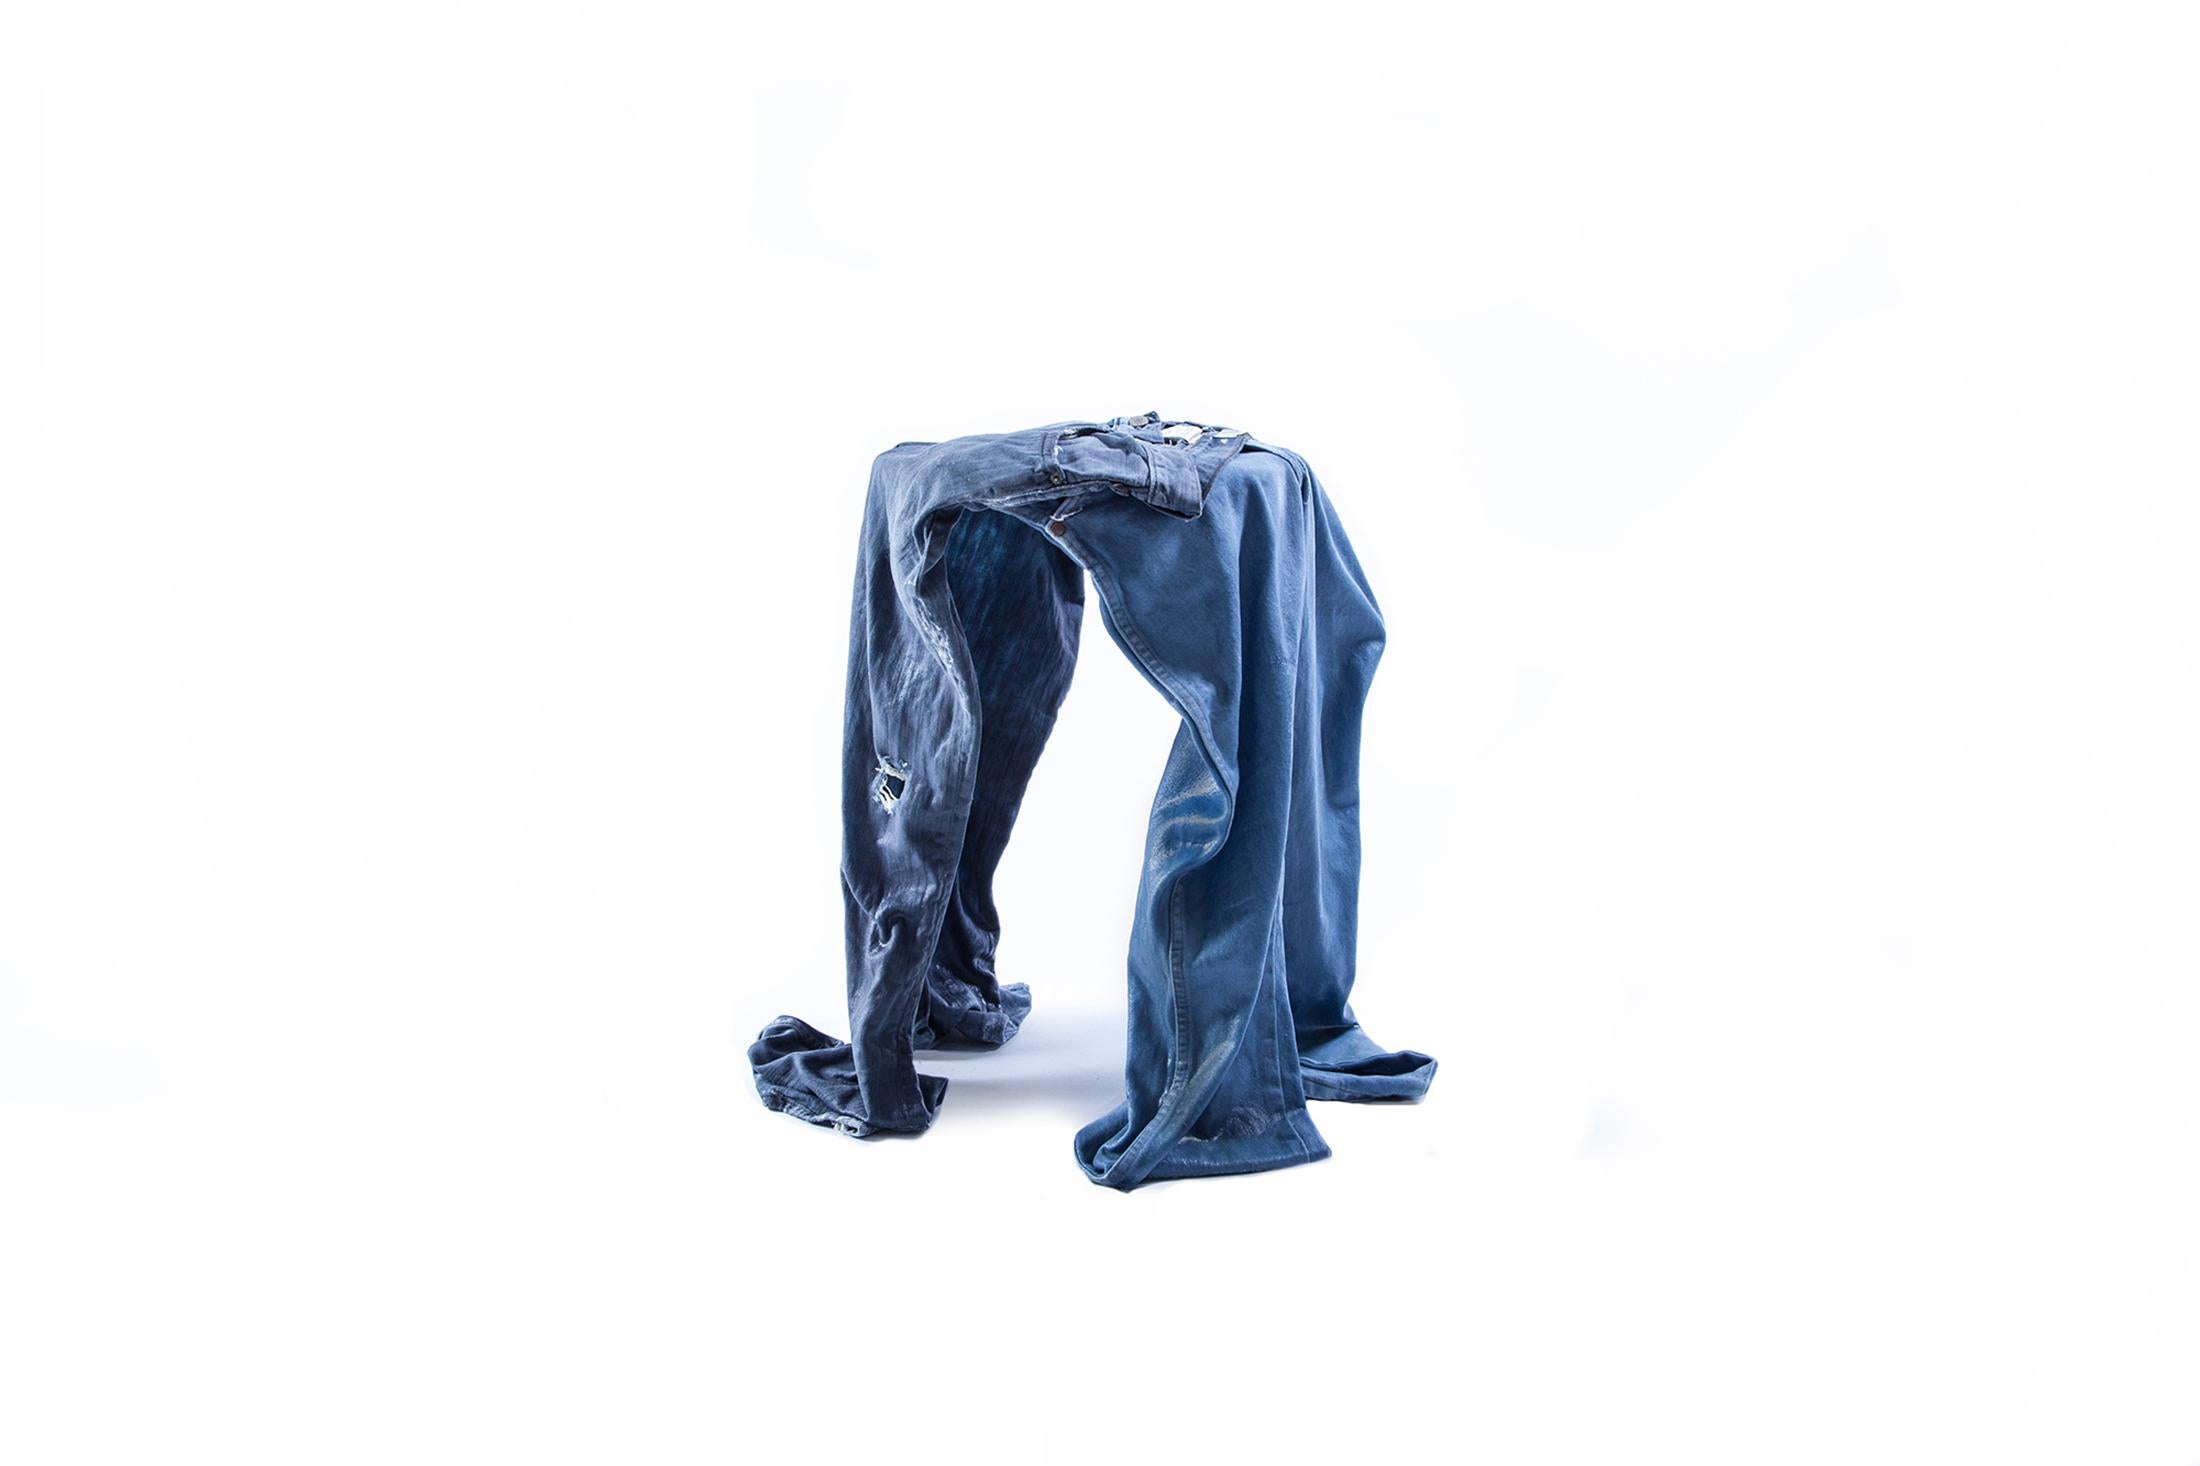 Américain Tabouret contemporain en denim, fabriqué à partir de jeans bleus 